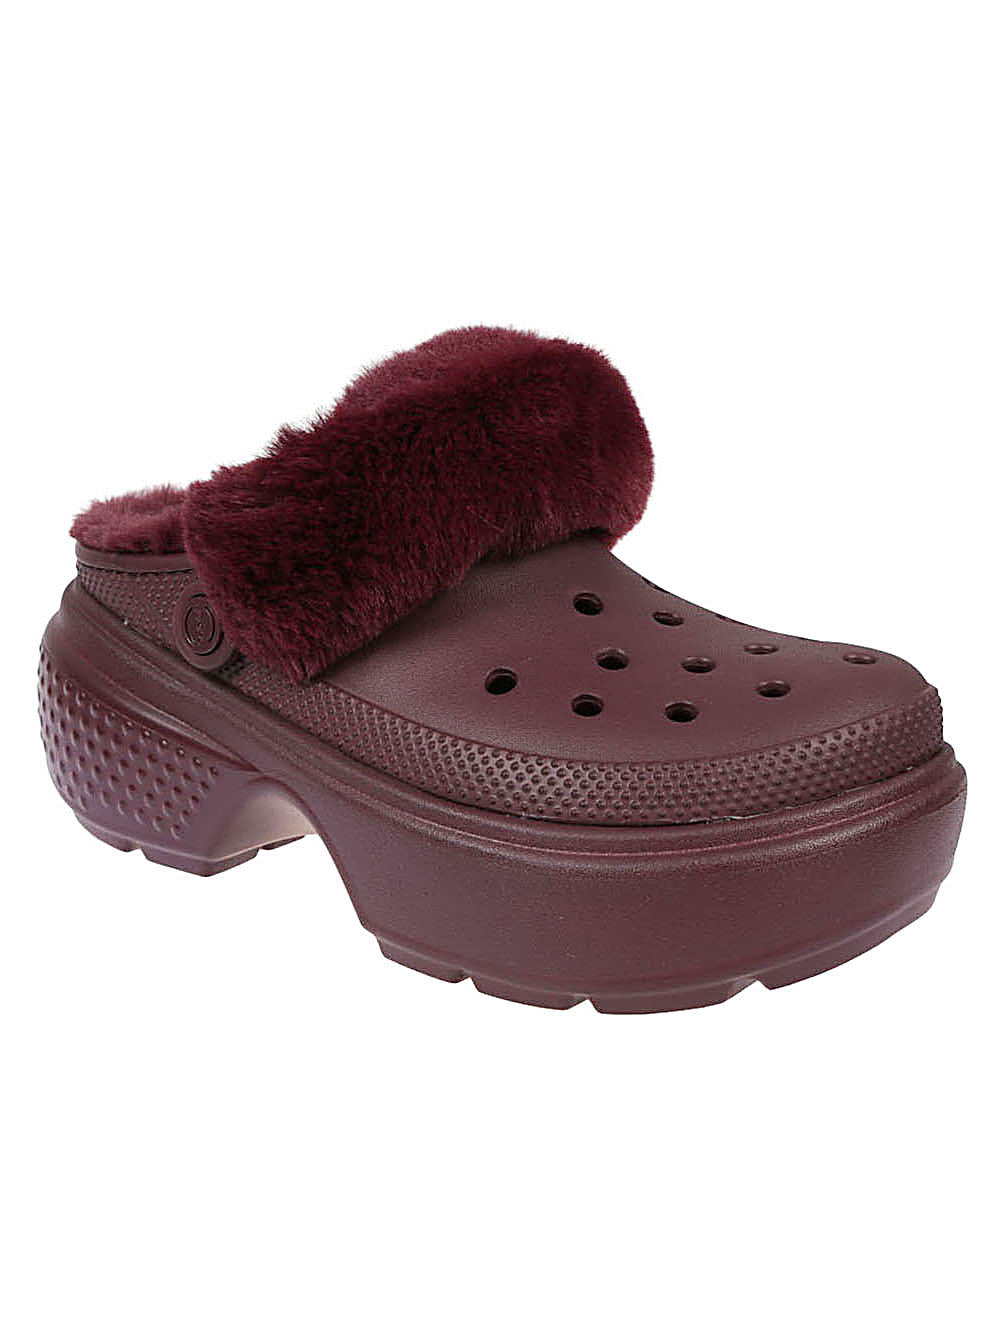 Crocs Crocs Sandals Bordeaux